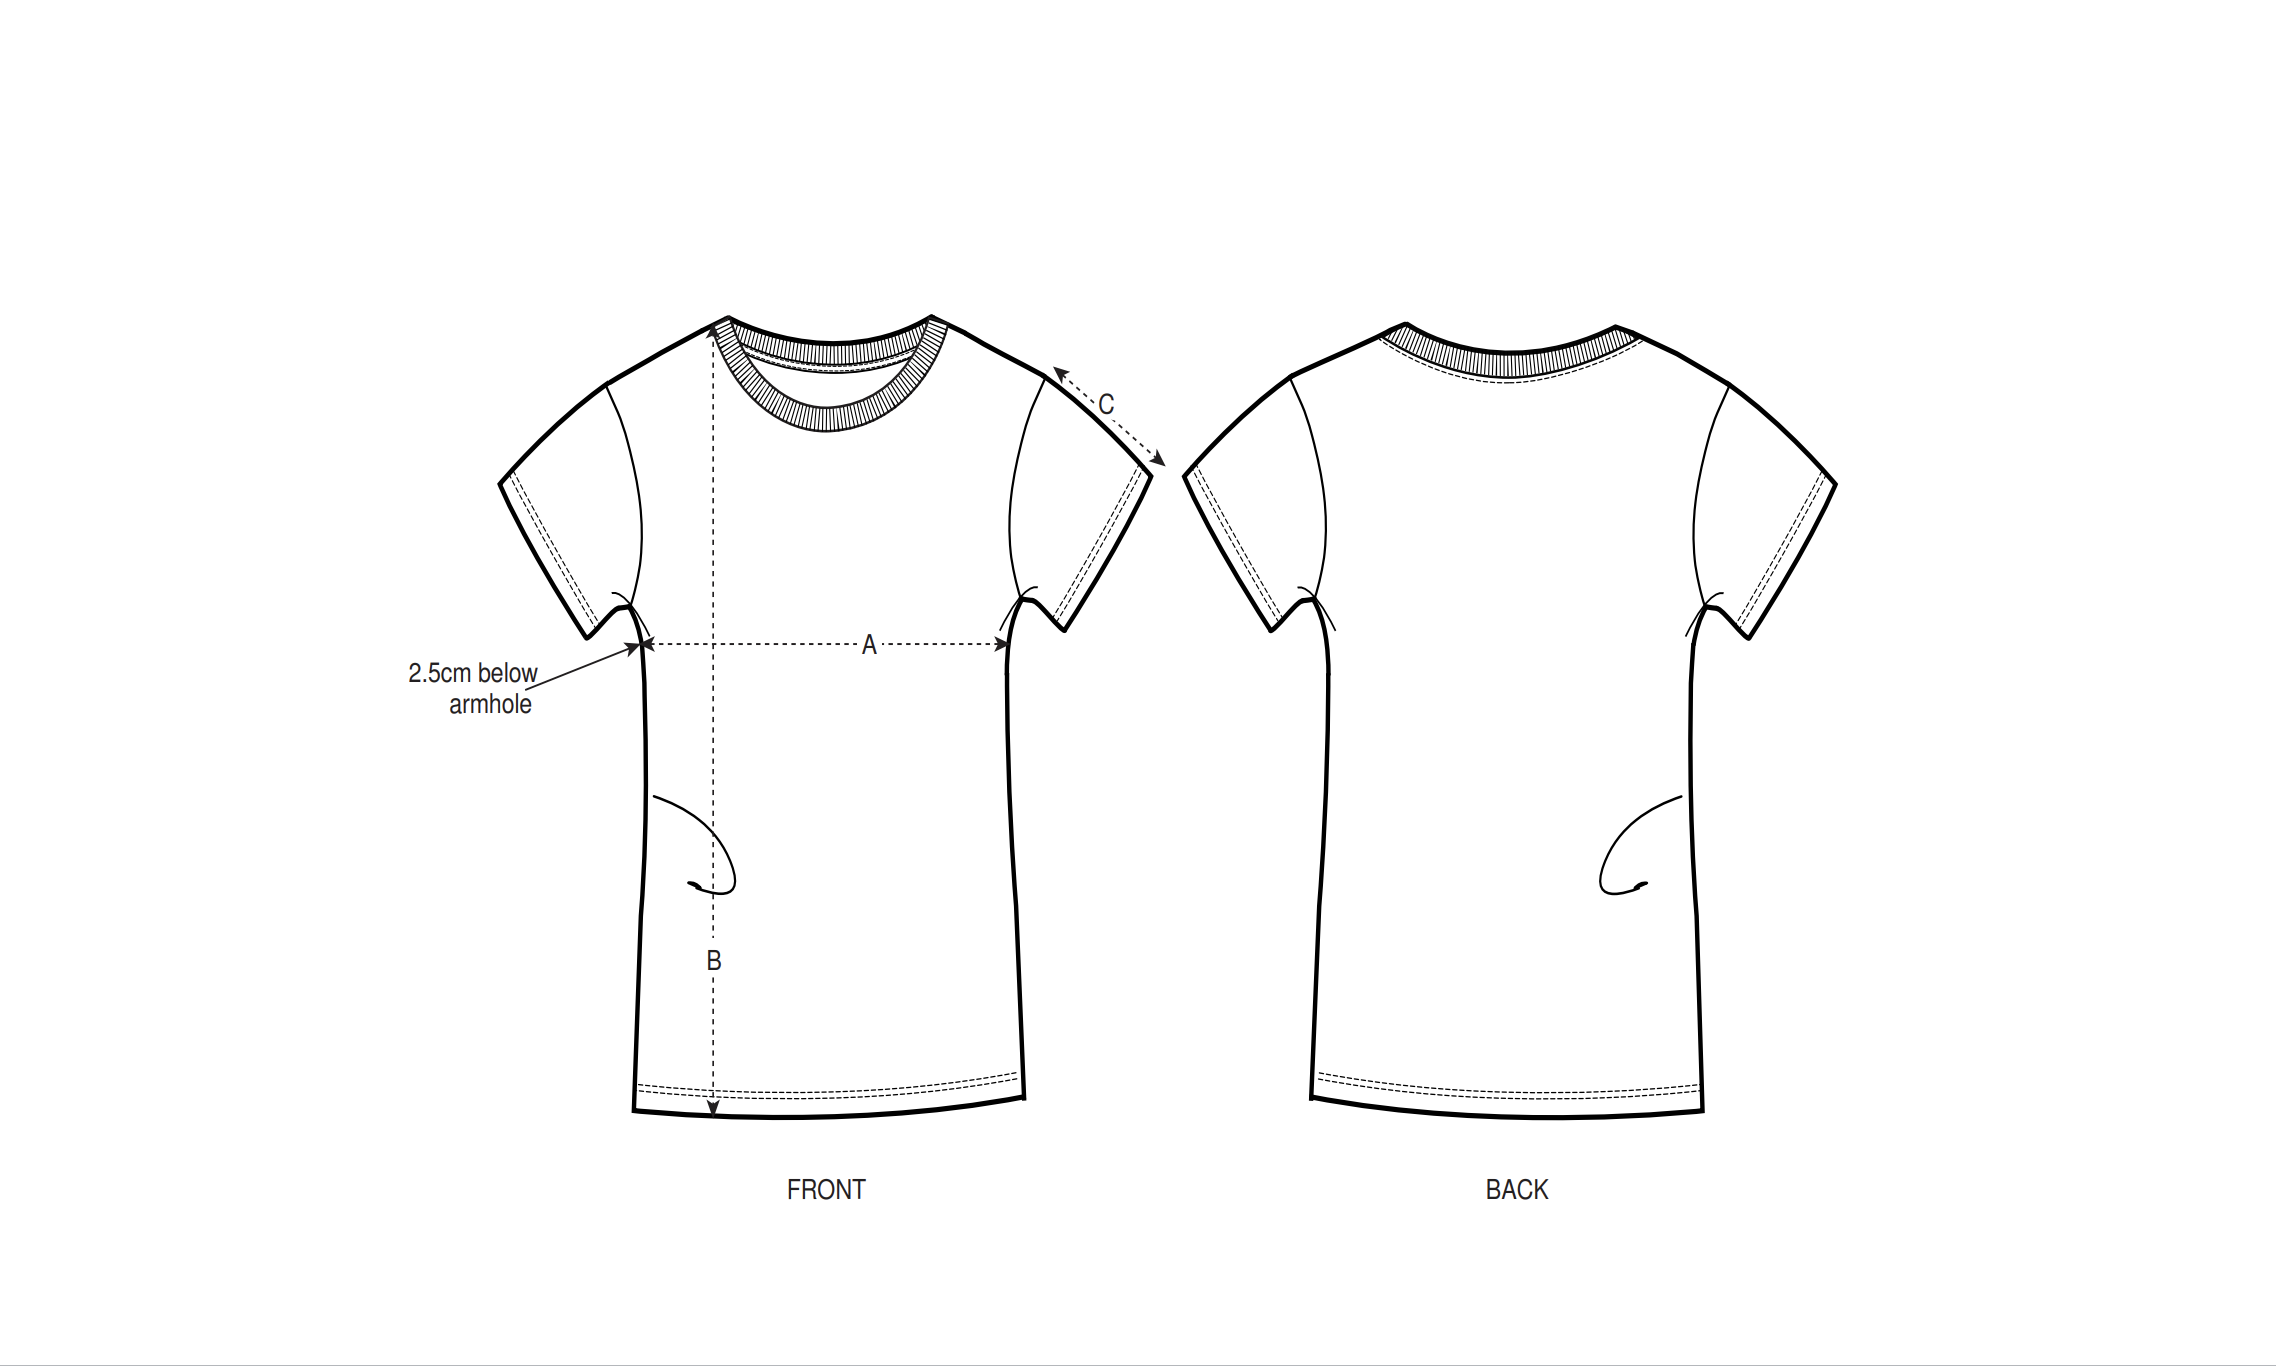 Qué modelo escoger para personalizar tus camisetas? - Createx